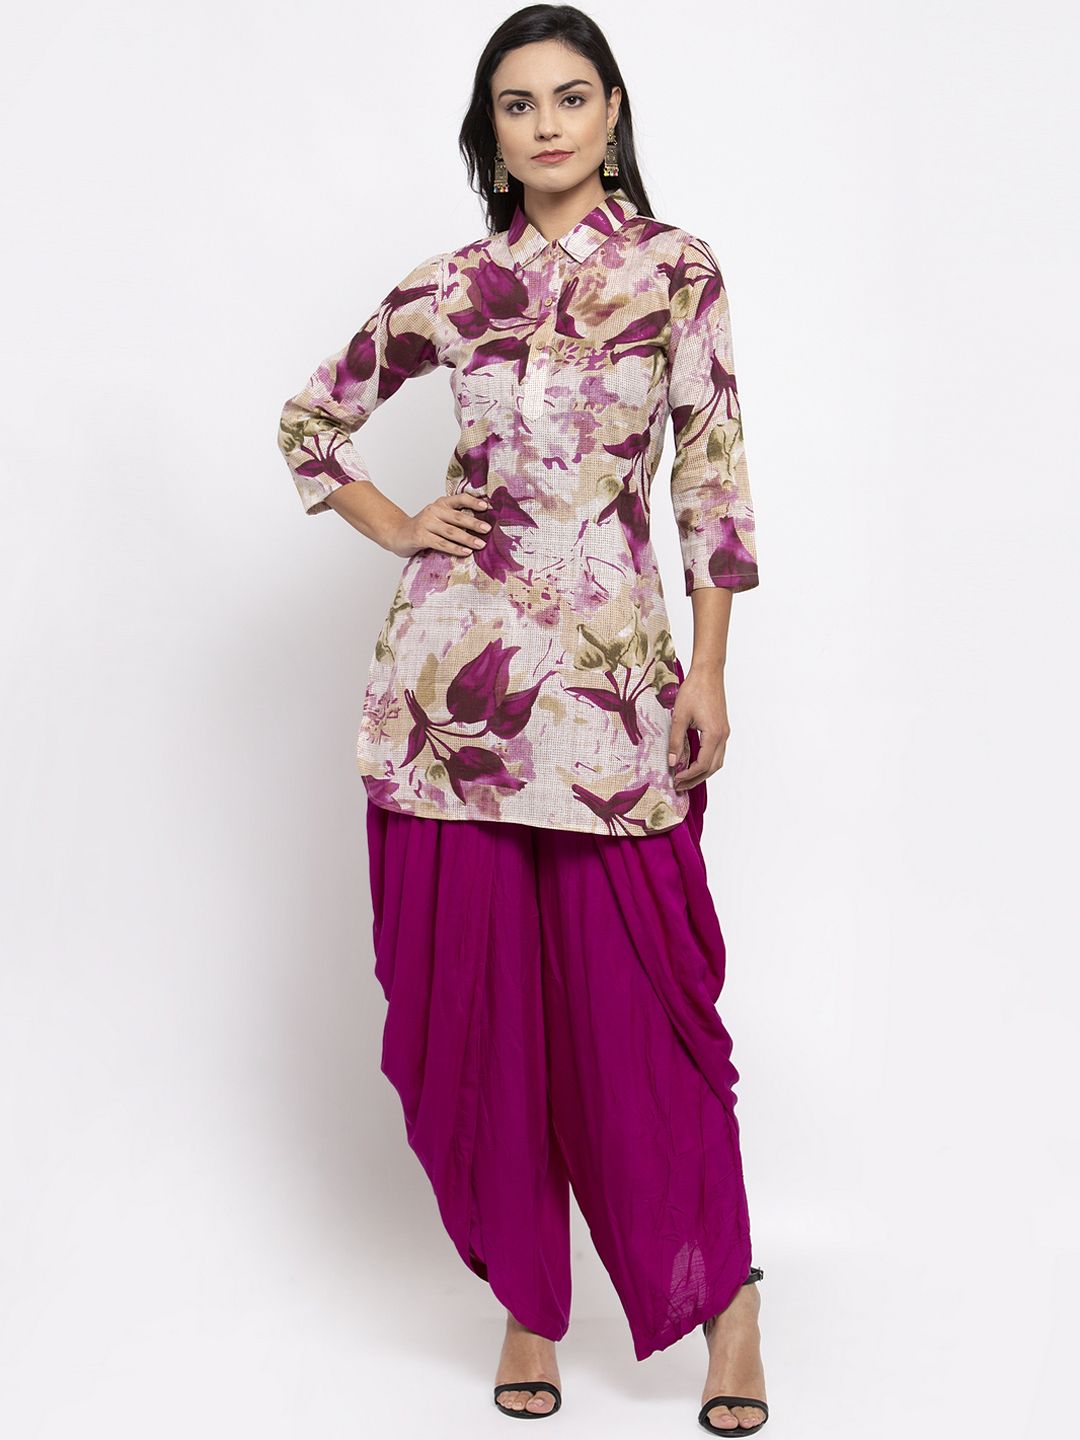 Jompers Women Purple & Beige Floral Printed Kurti Price in India